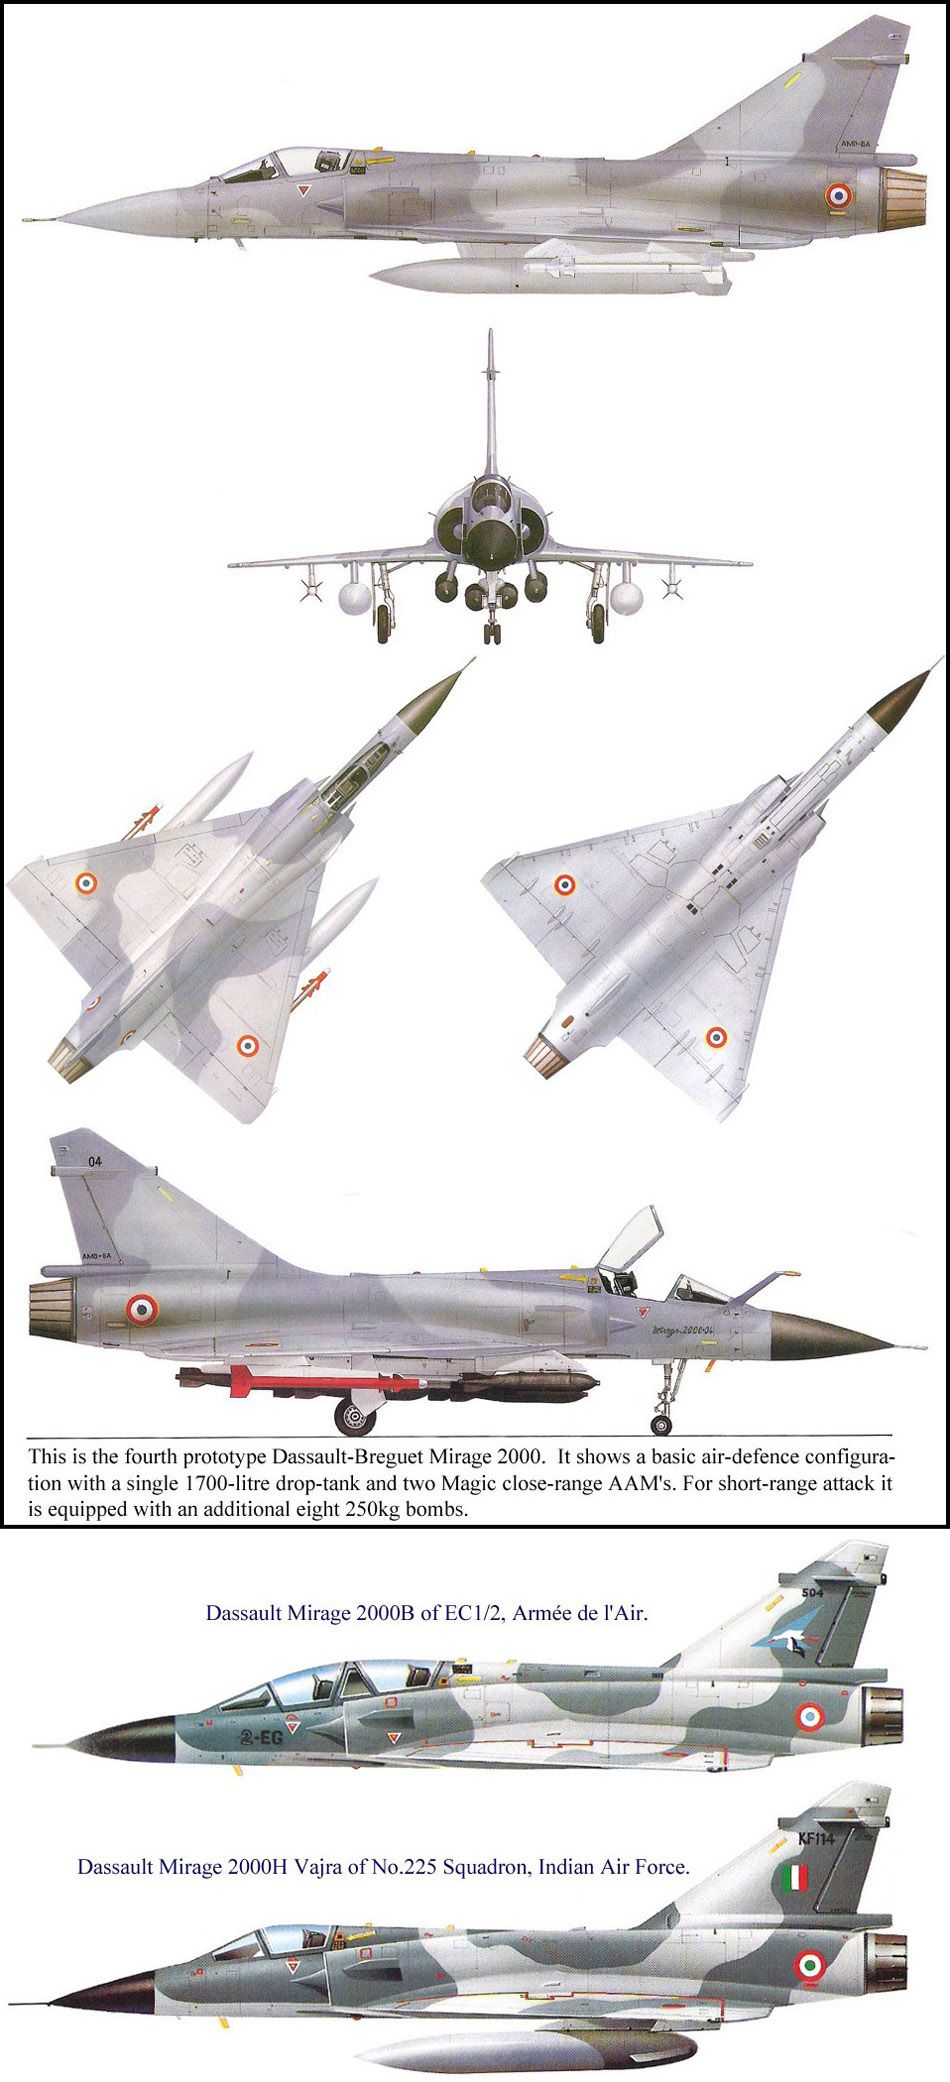 Dassault-Breguet Mirage 2000